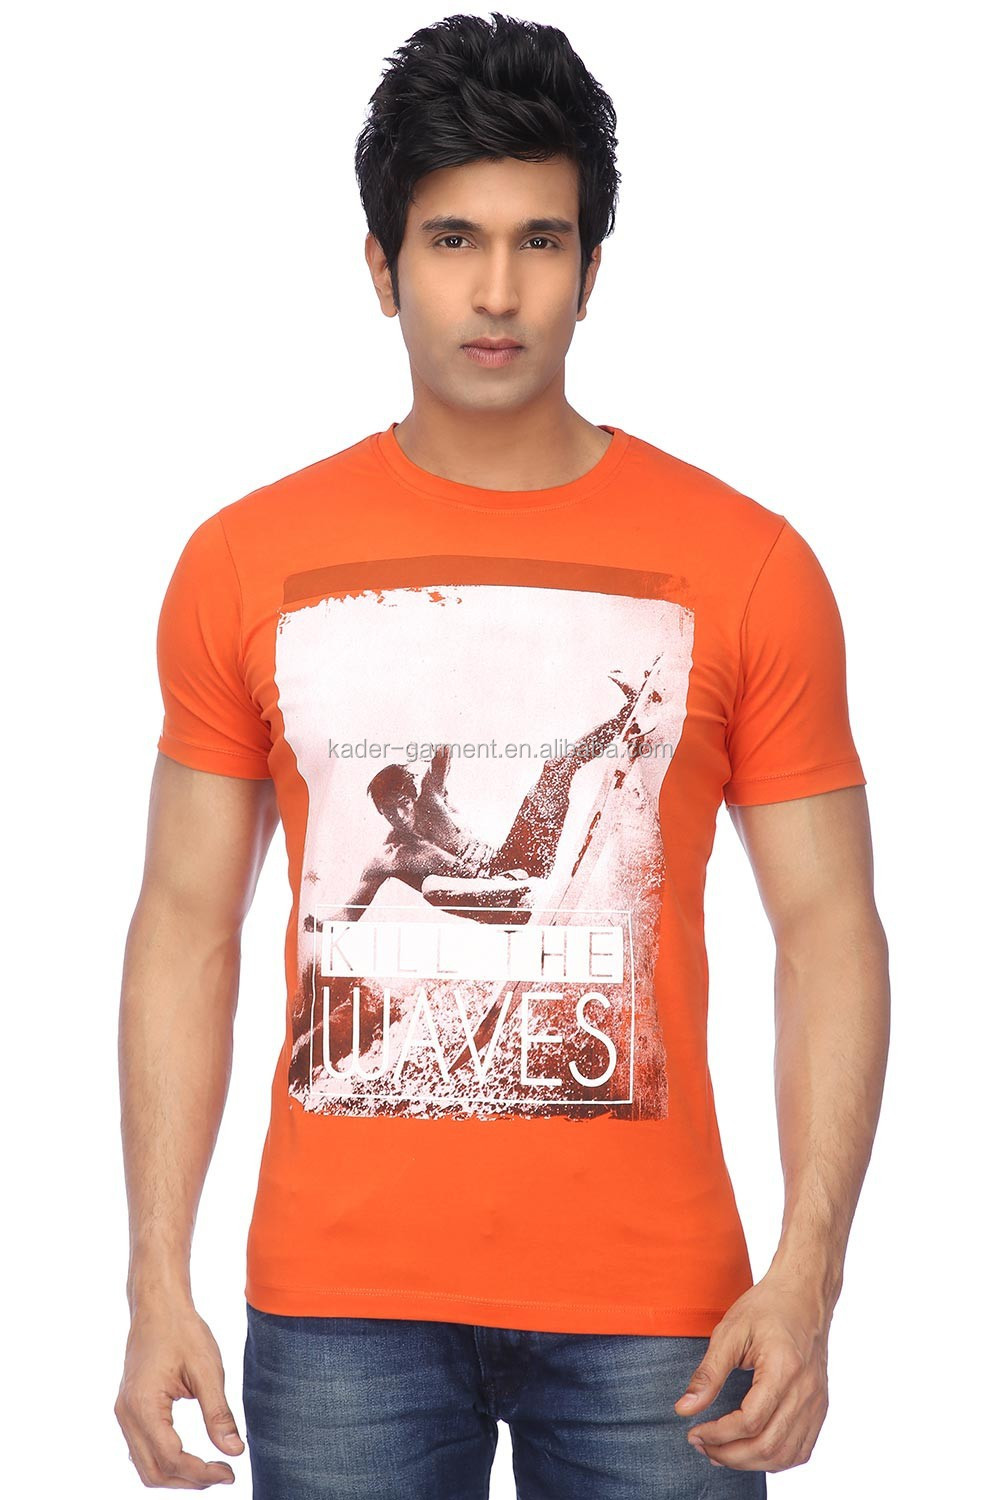 オレンジ色のtシャツ綿のtシャツメンズオリジナル2015熱い販売仕入れ・メーカー・工場